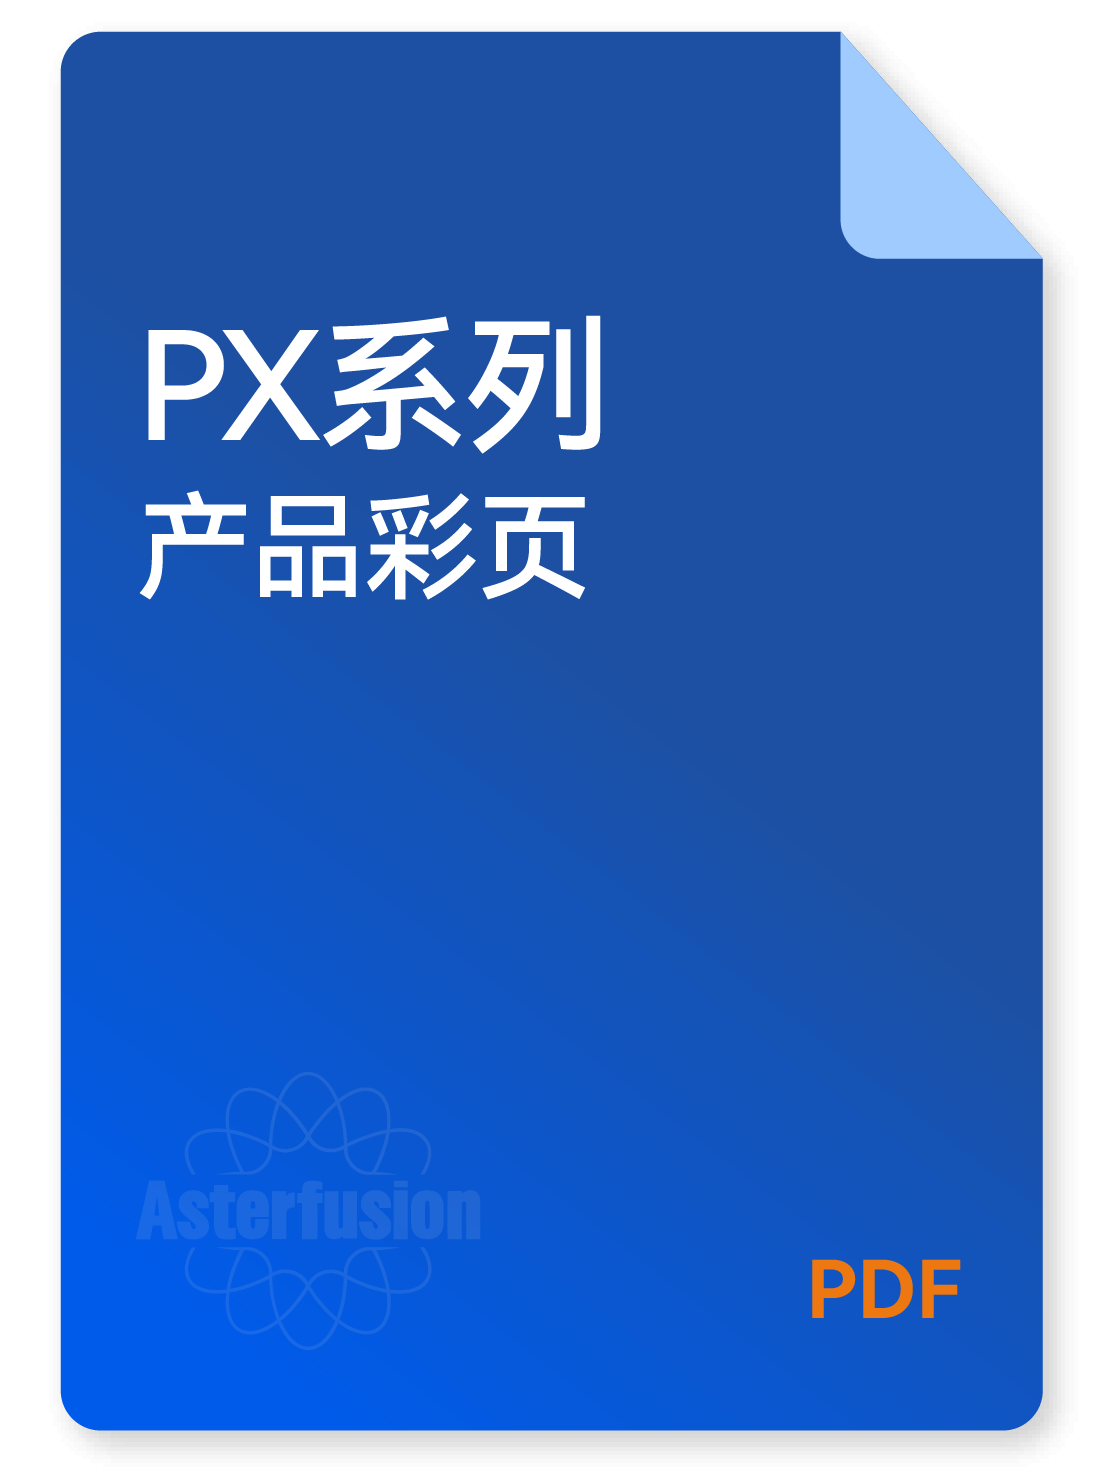 PX系列产品资料的下载图标